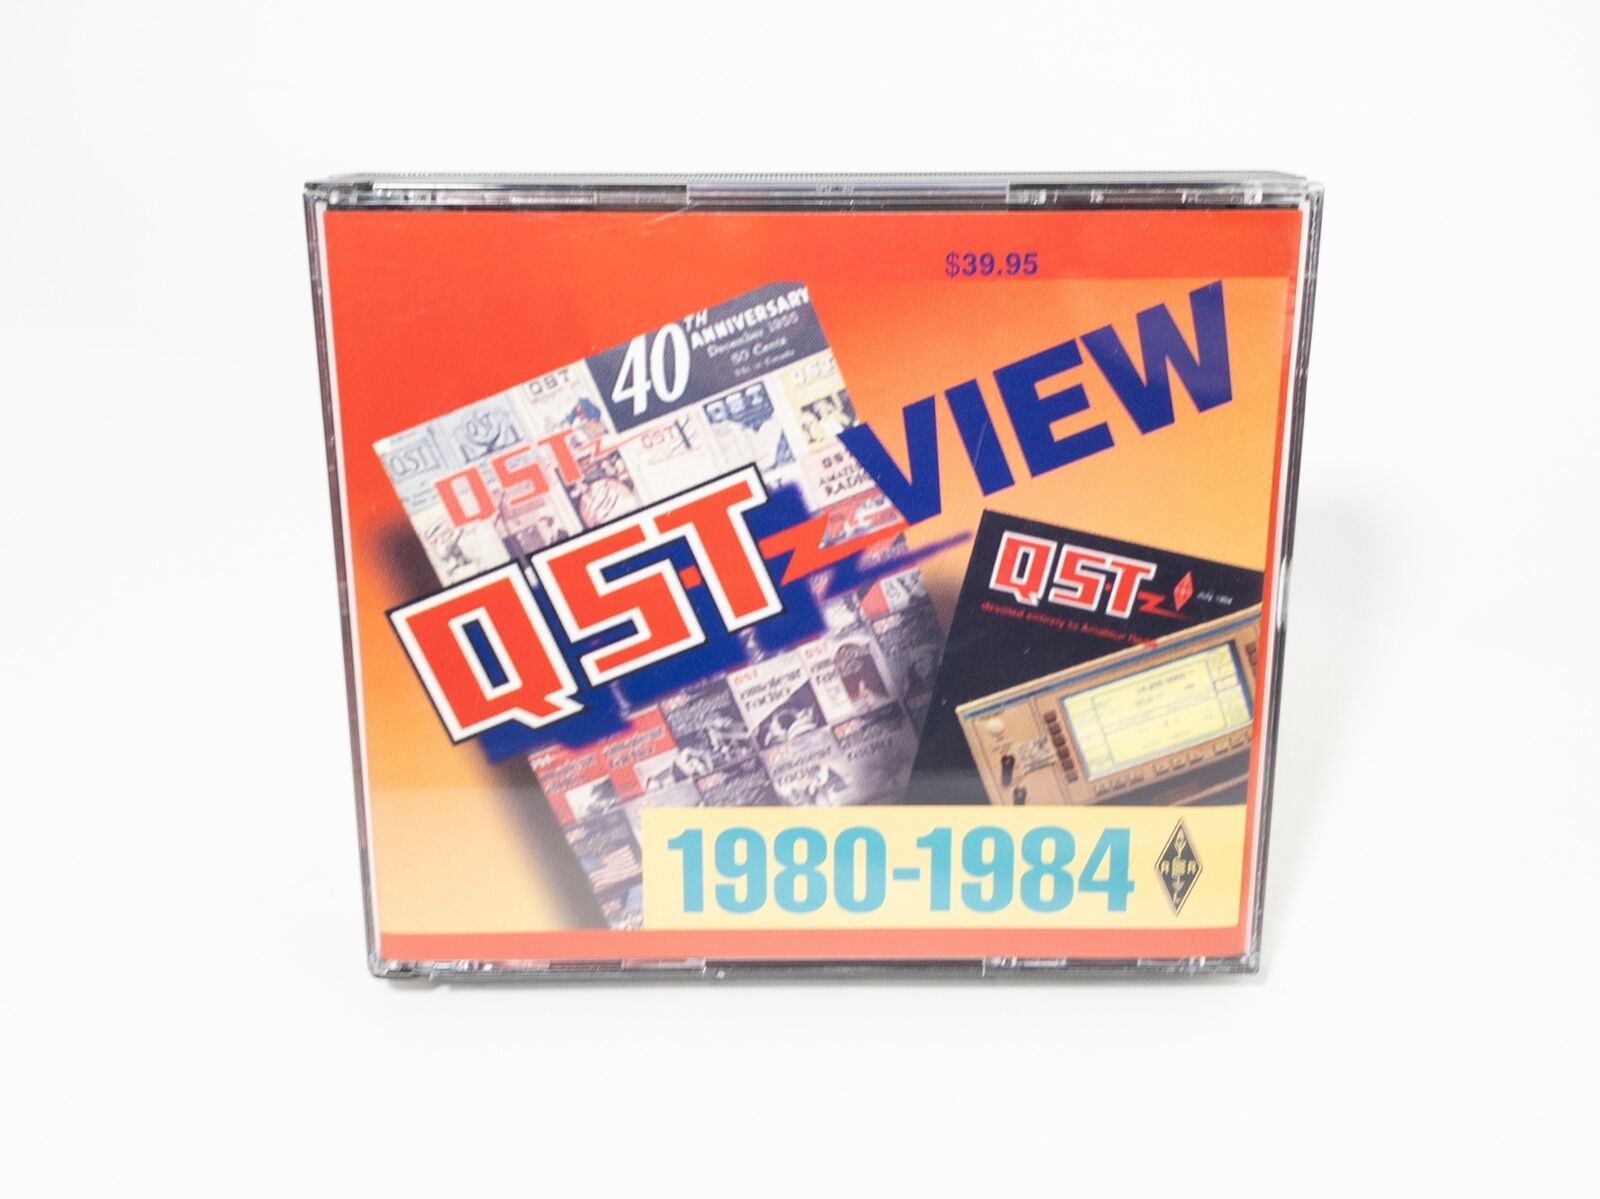 QST VIEW 1980-1984 ARRL CD ROM Format Set- 3 CDs - Excellent & Rare